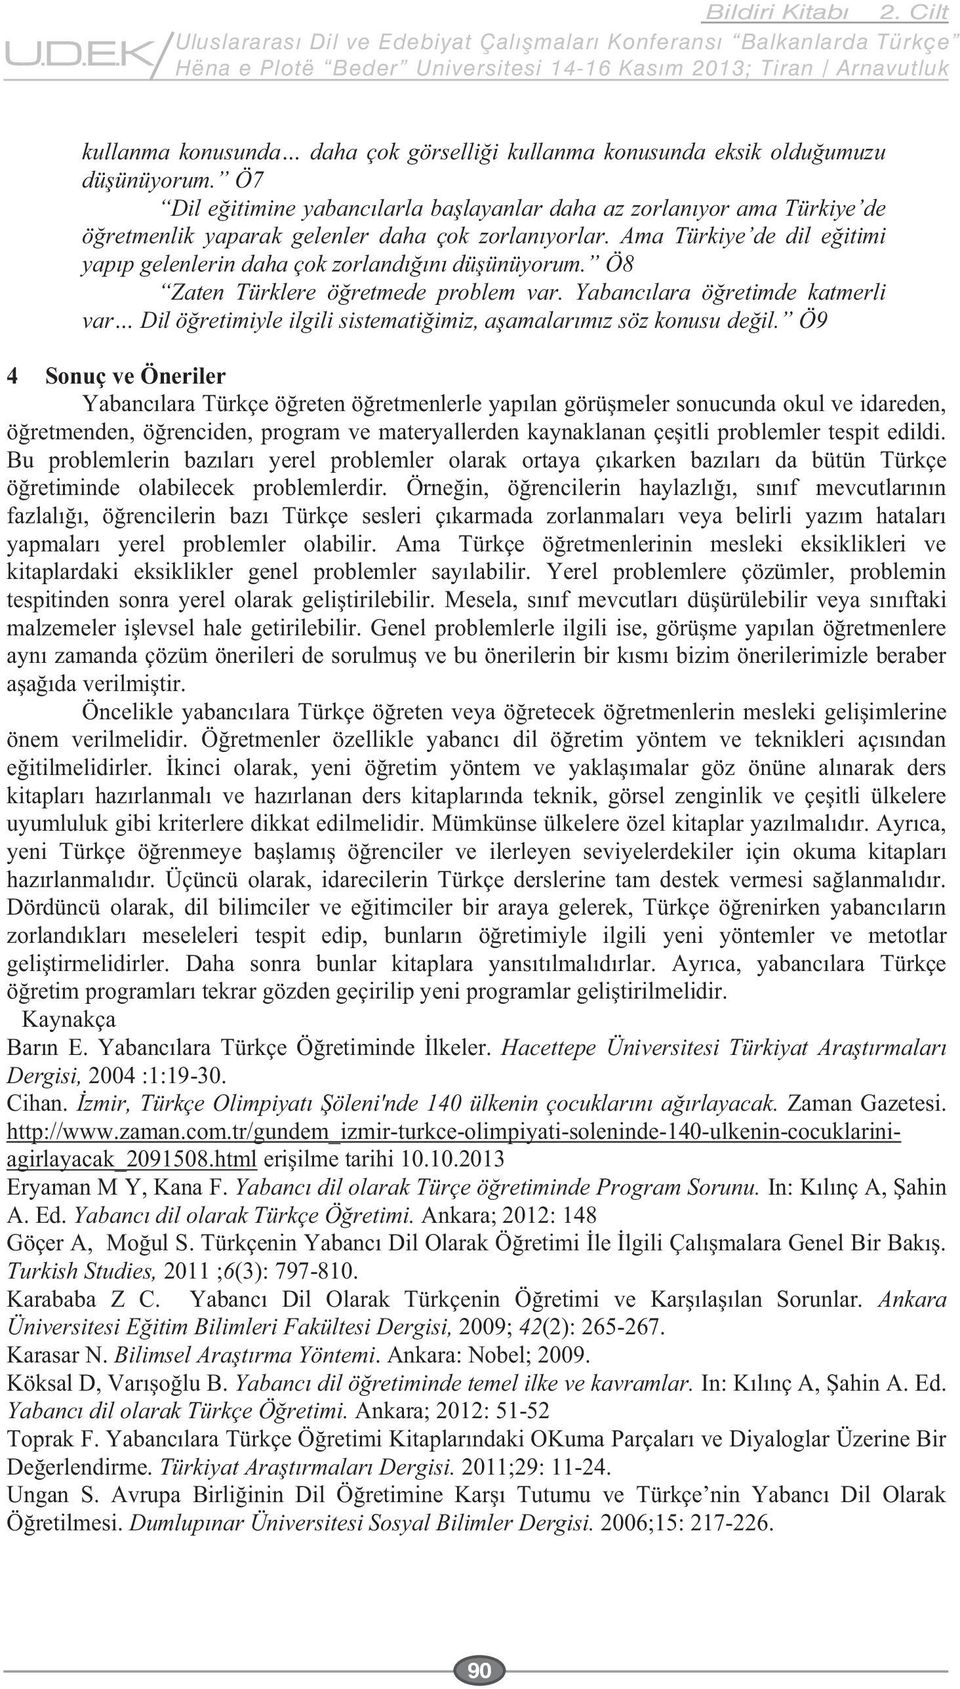 html Eryaman M Y, Kana F. A. Ed. Ankara; 2012: 148 Turkish Studies, 2011 ;6(3): 797-810.